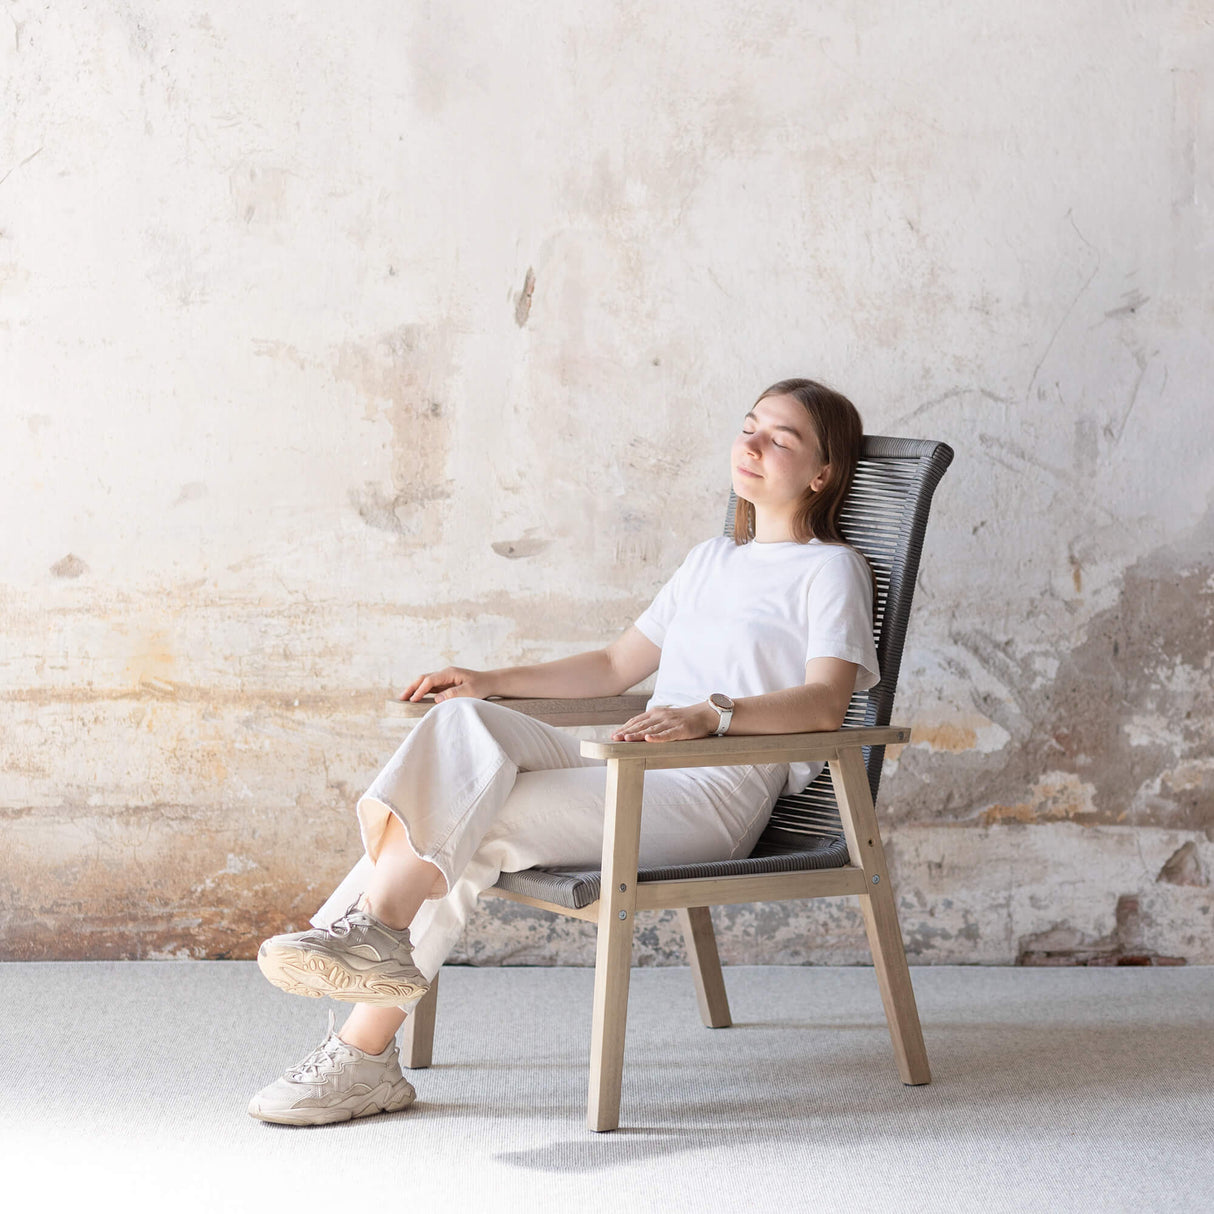 Akazienholz Beistelltisch Stühle Soul mit Set mypureliving | aus Zweier